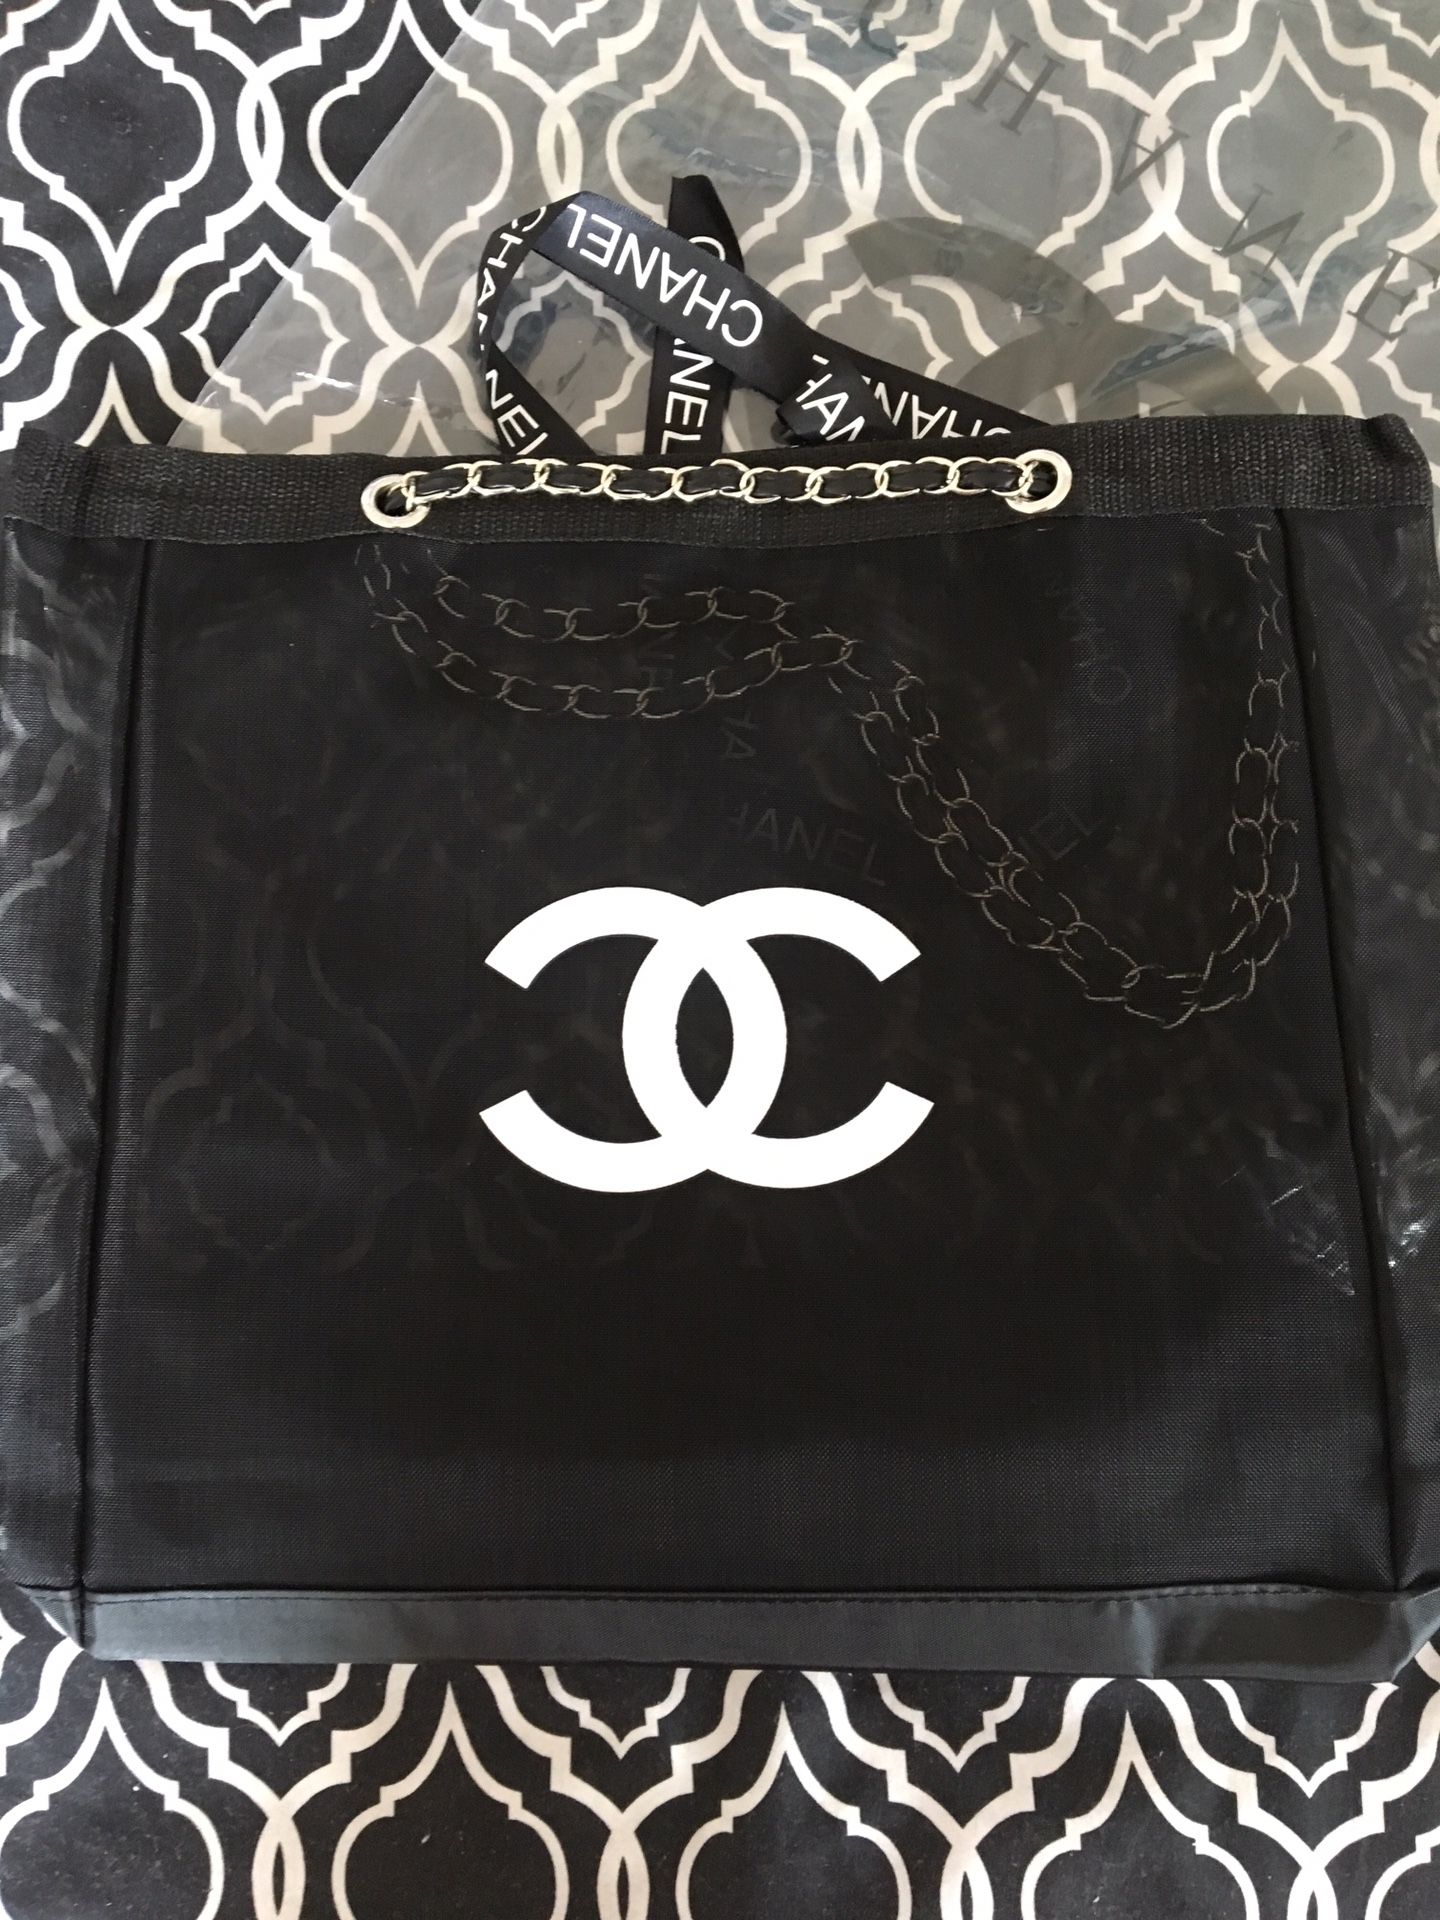 Lot - Chanel VIP Gift Tote Bag